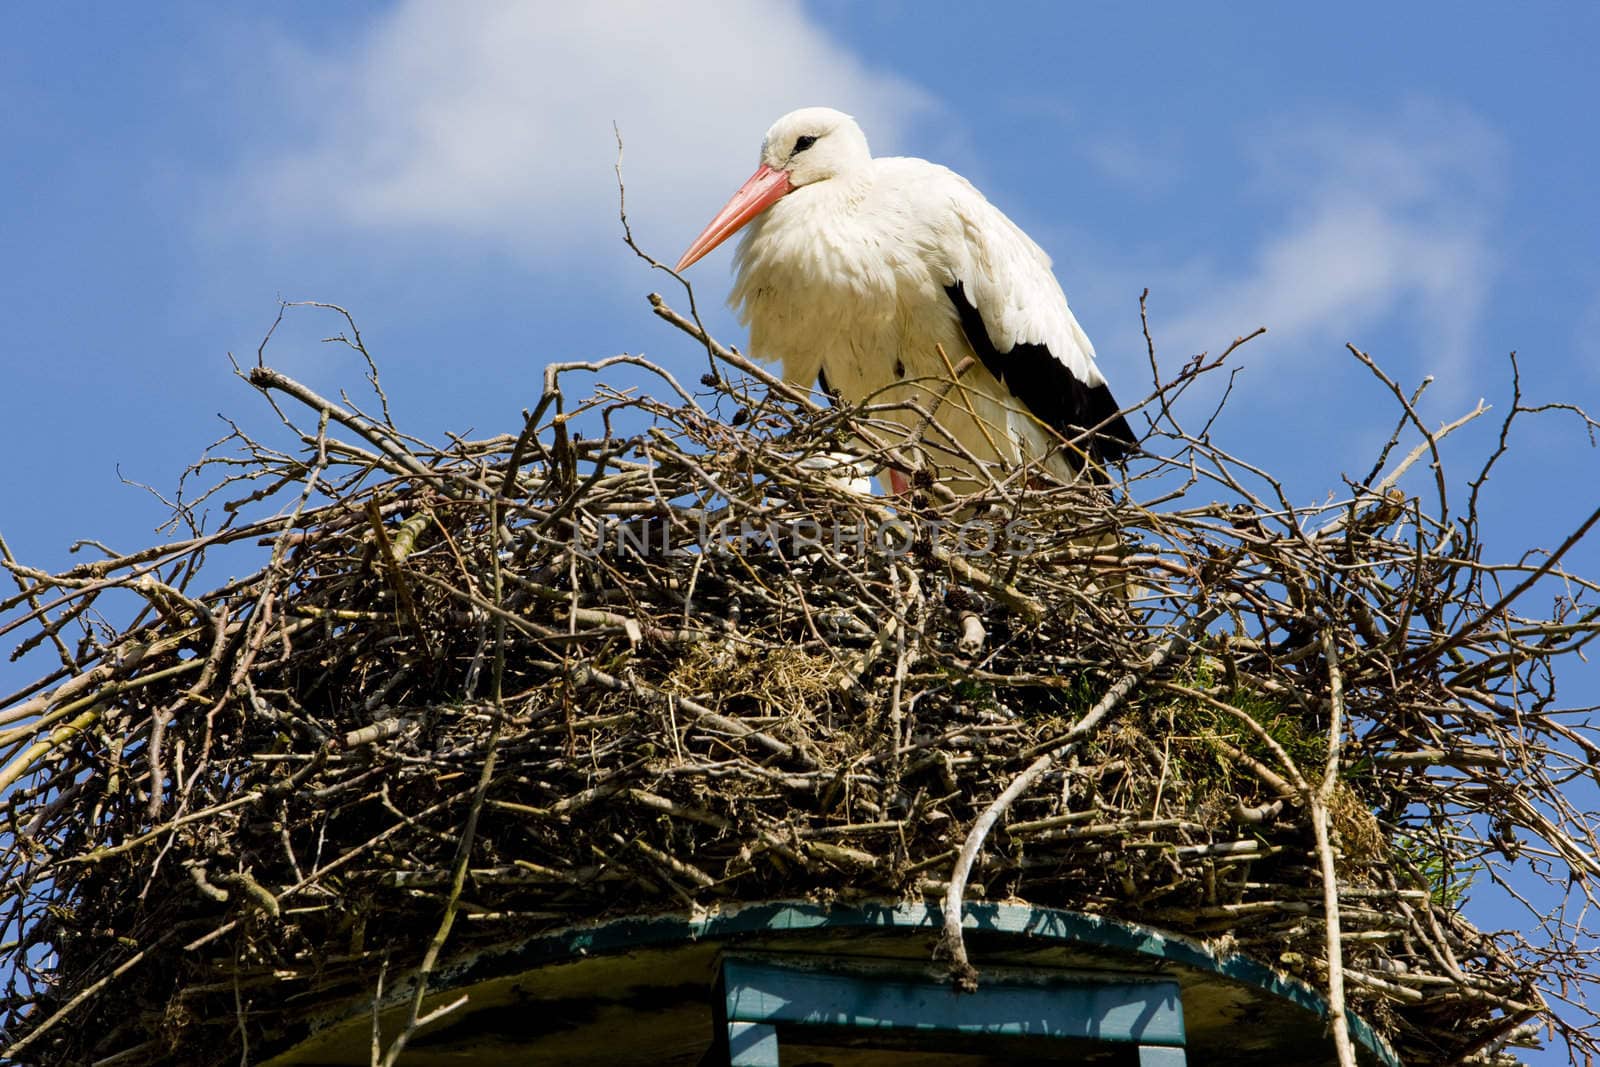 stork, Netherlands by phbcz